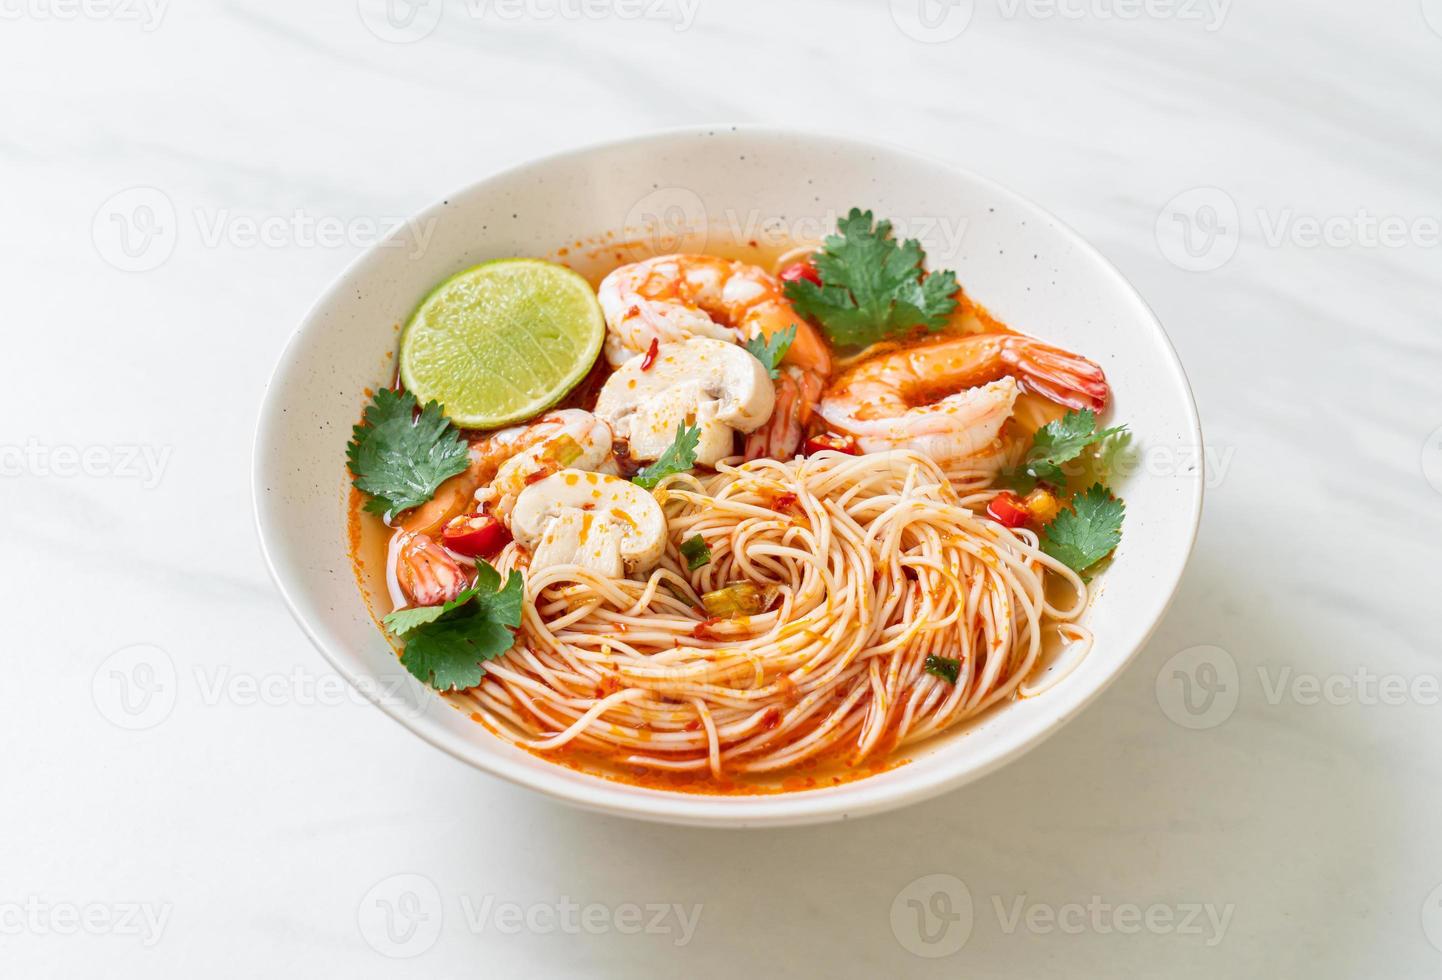 nouilles avec soupe épicée et crevettes ou tom yum kung - style cuisine asiatique photo